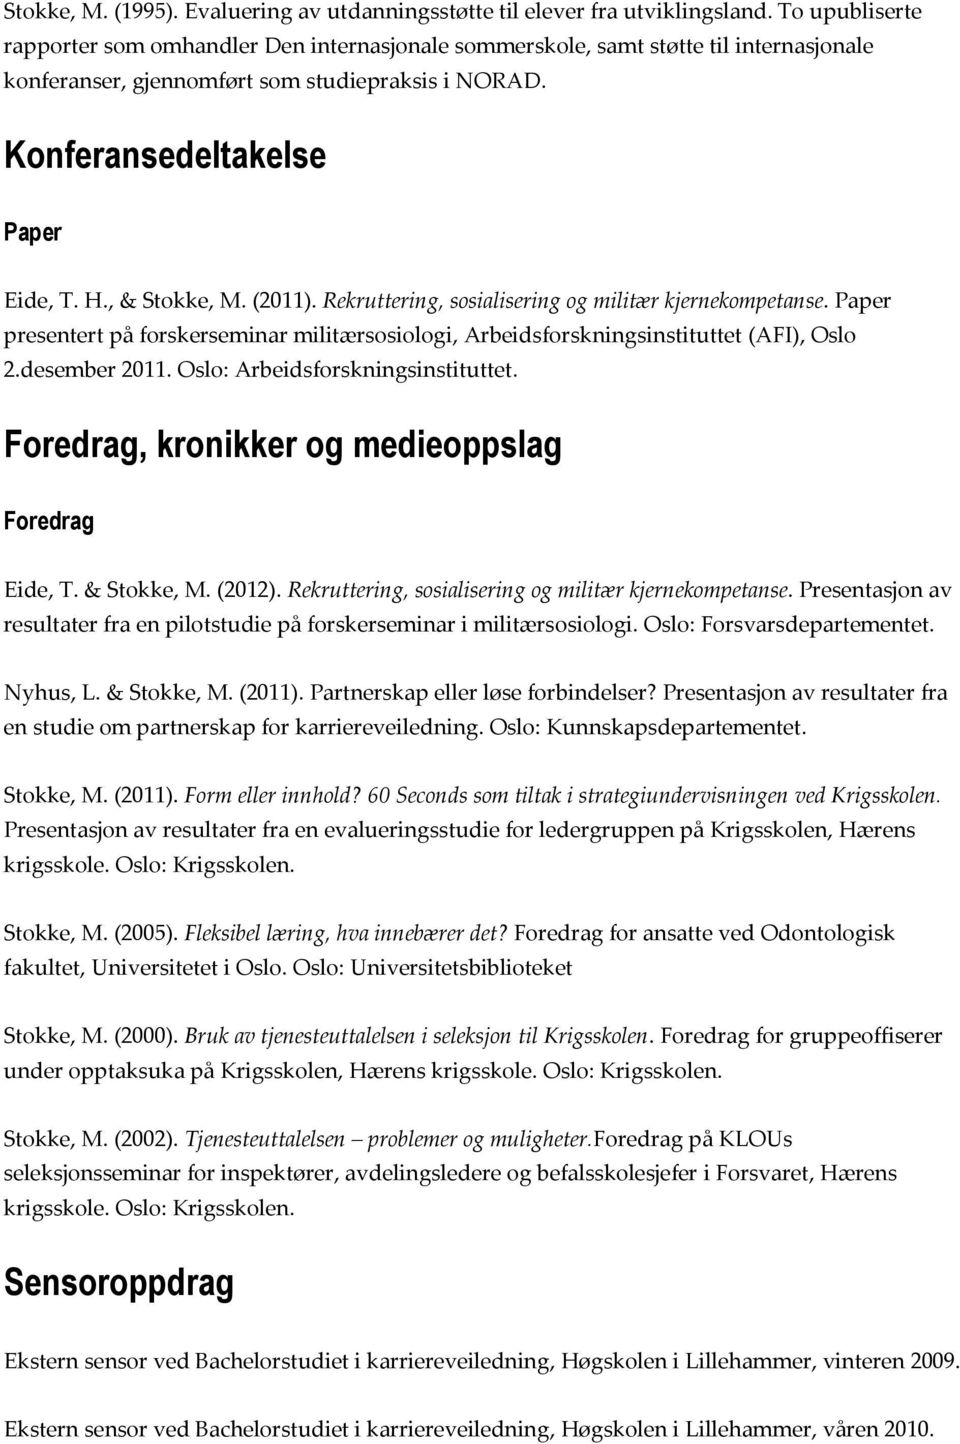 , & Stokke, M. (2011). Rekruttering, sosialisering og militær kjernekompetanse. Paper presentert på forskerseminar militærsosiologi, Arbeidsforskningsinstituttet (AFI), Oslo 2.desember 2011.